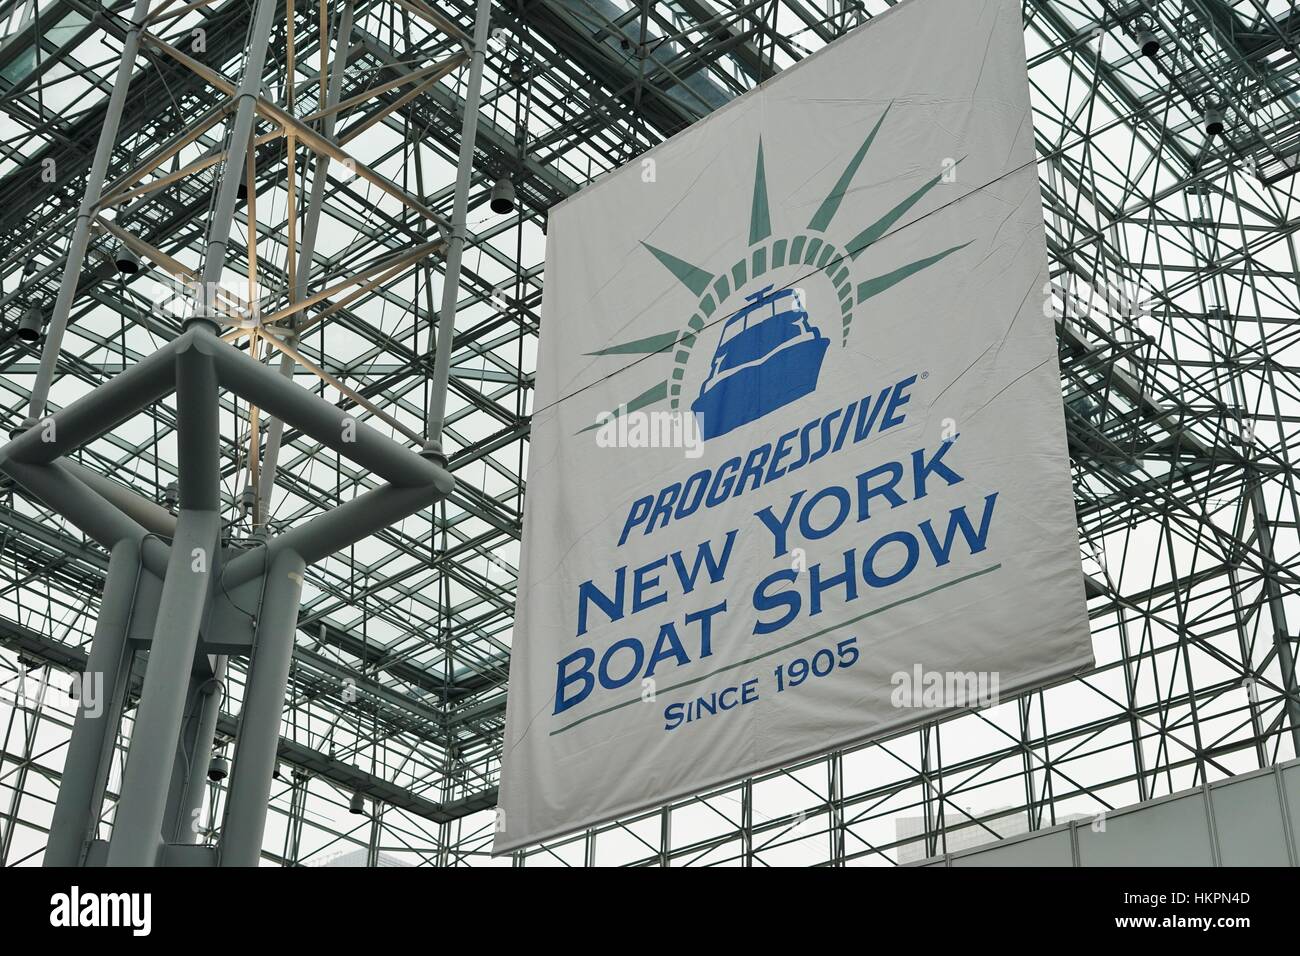 La progresiva Nueva York Boat Show tuvo lugar en el Centro de Convenciones Jacob K. Javits en Nueva York del 25 al 29 de enero, 2017 Foto de stock